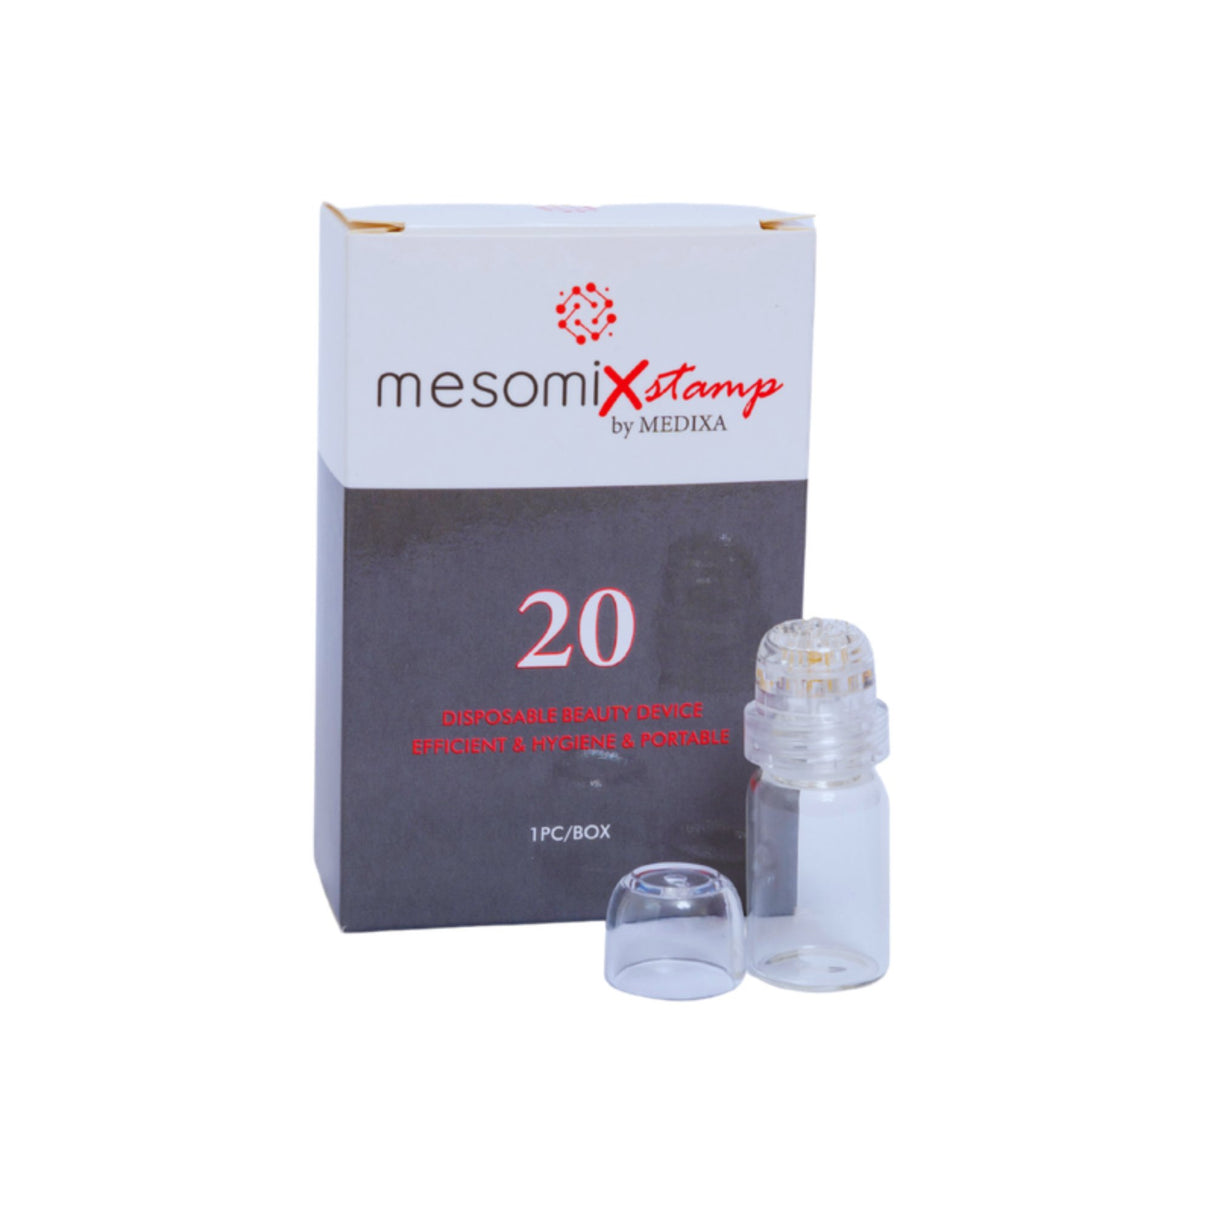 Mesomix Stamp - Filler Lux™ - Medical Device - Medixa